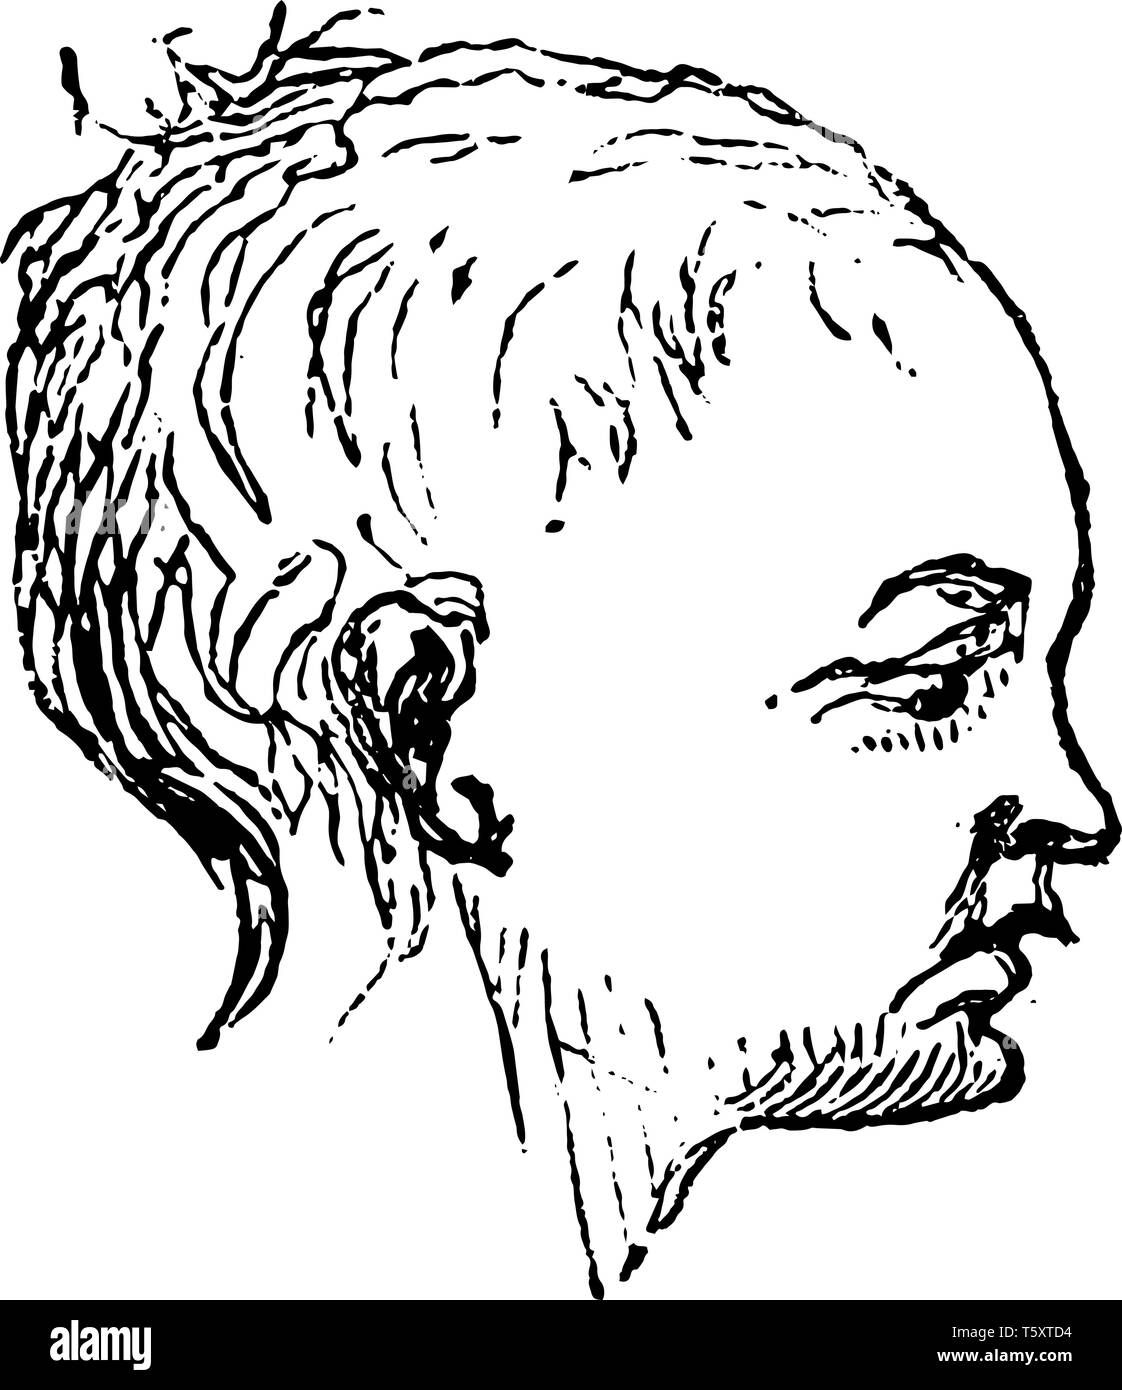 Gesicht des Menschen Kopf Profil in diesem Bild, vintage Strichzeichnung oder Gravur Abbildung. Stock Vektor